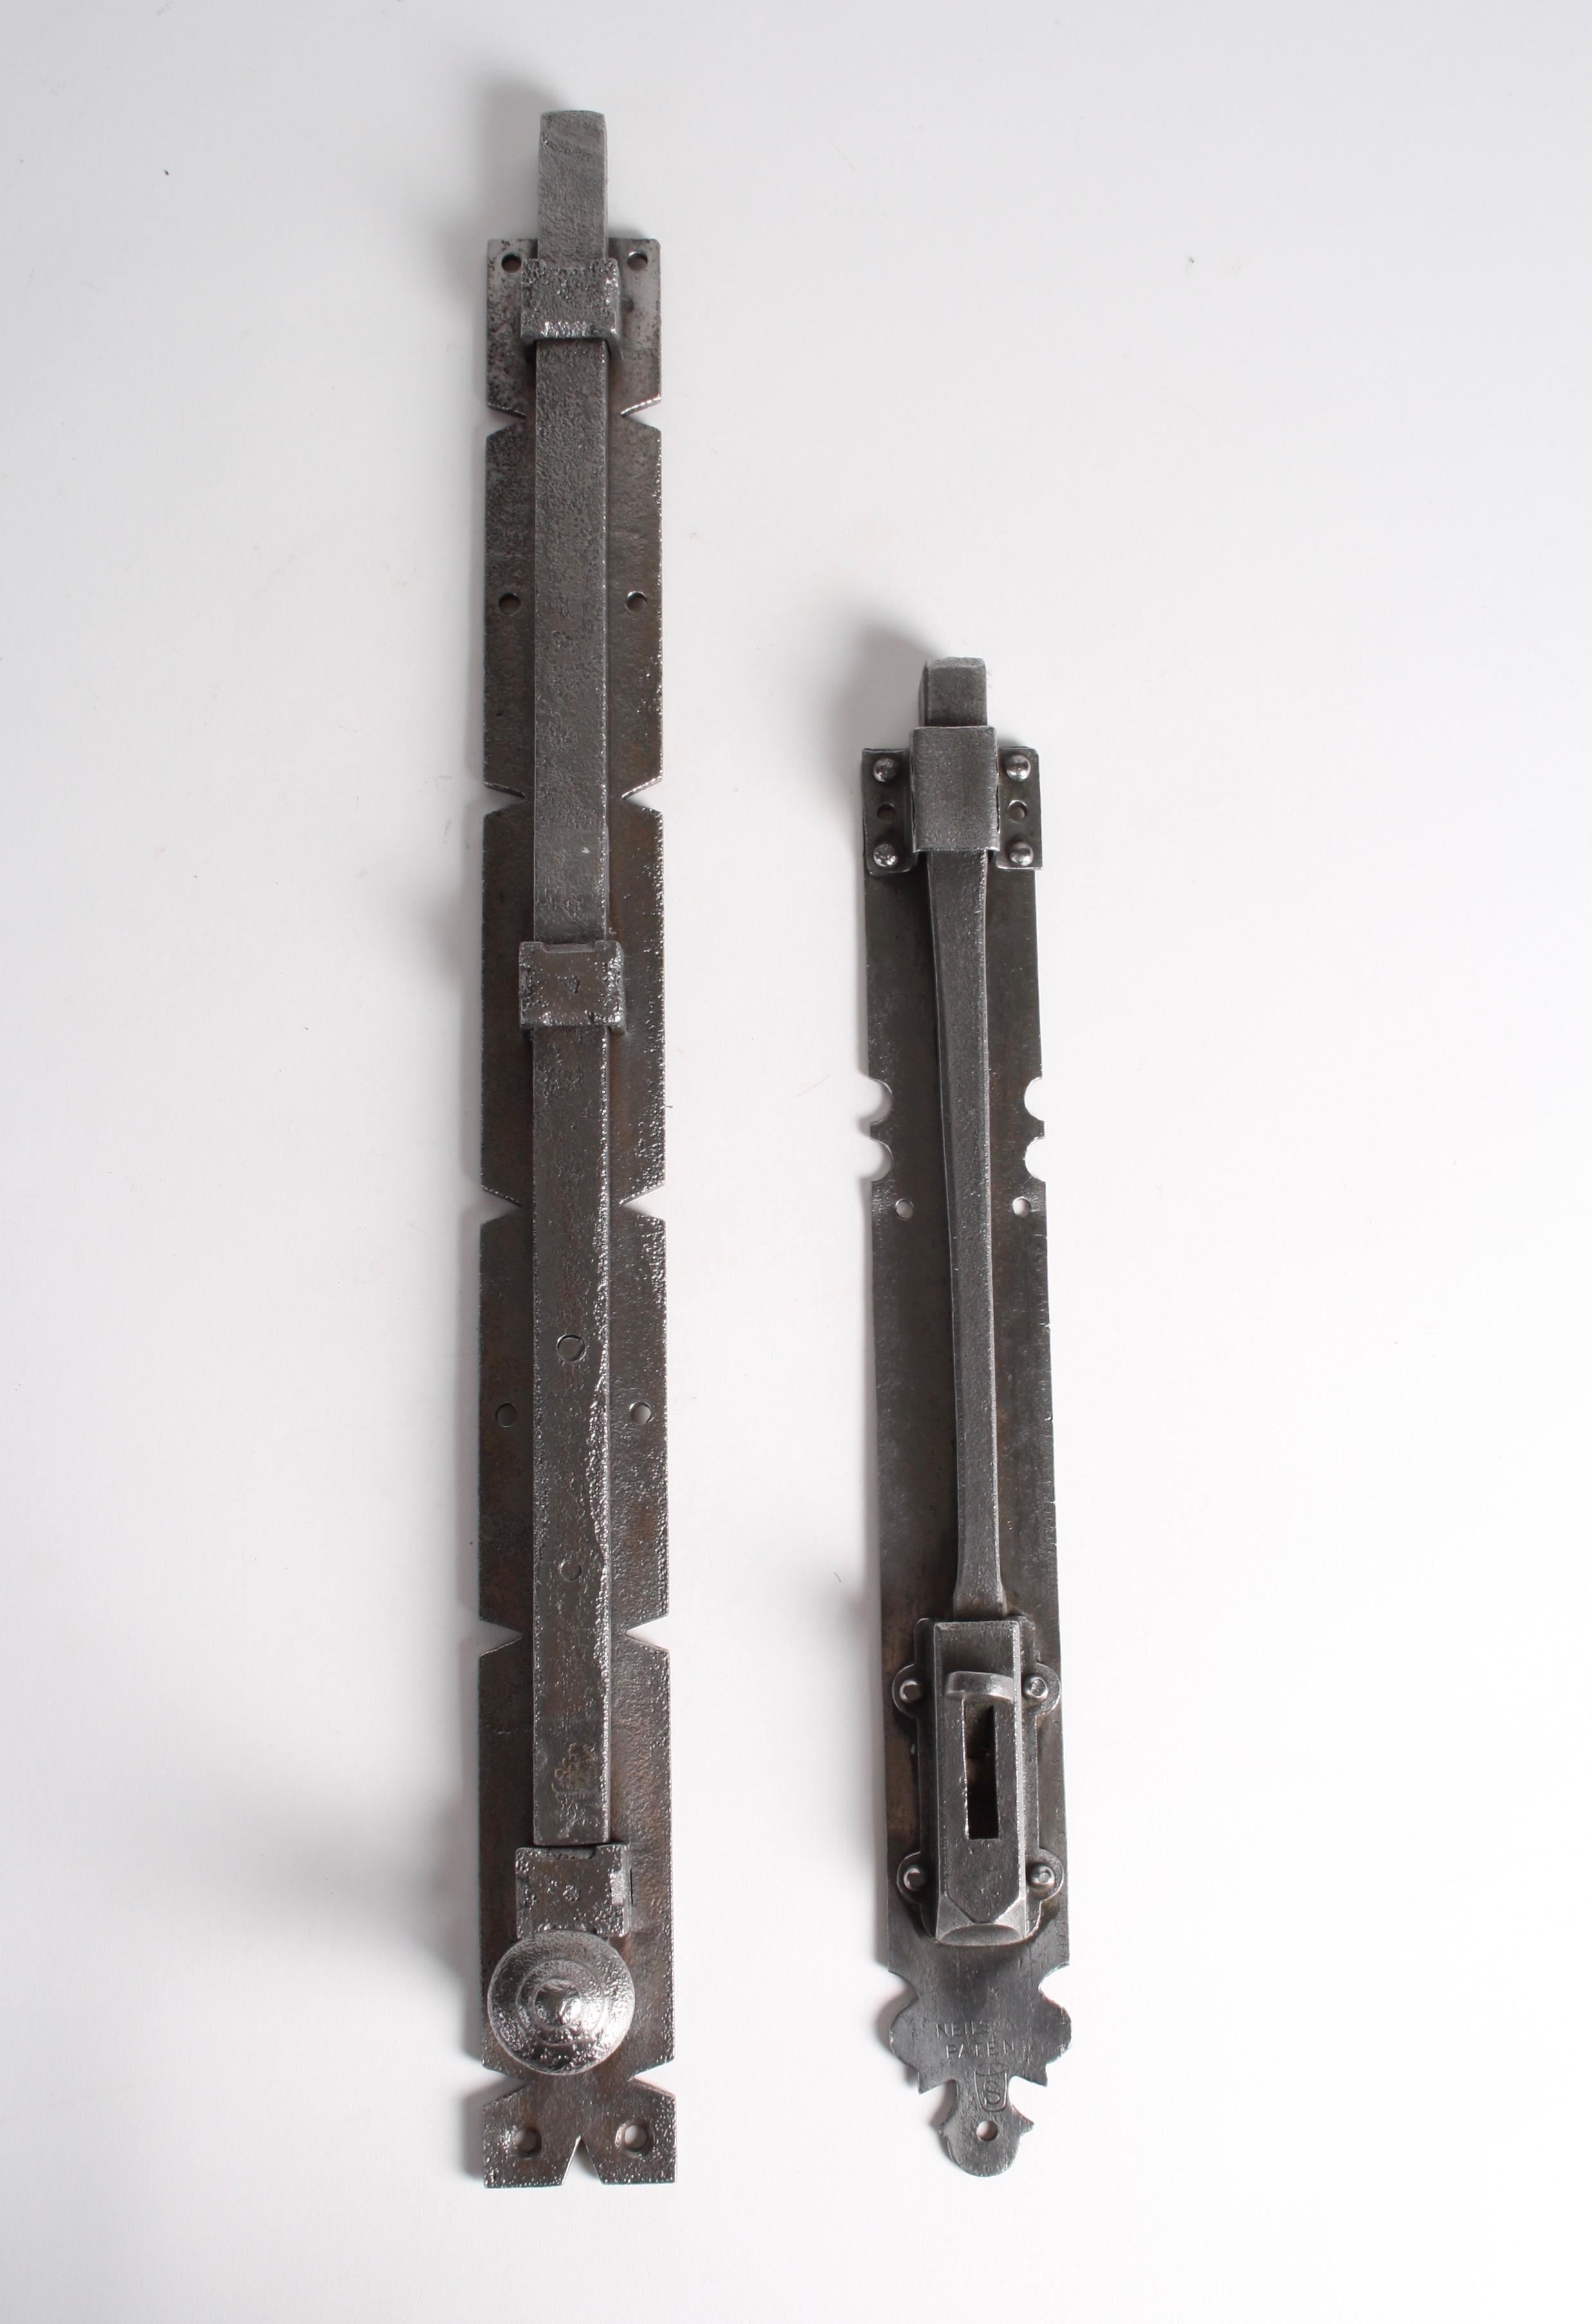 Zwei oberflächenmontierte Türriegel aus Stahl in Übergröße, einer mit der Aufschrift Nielson Patent.

Maße: 16 Zoll und 22 1/2 Zoll.